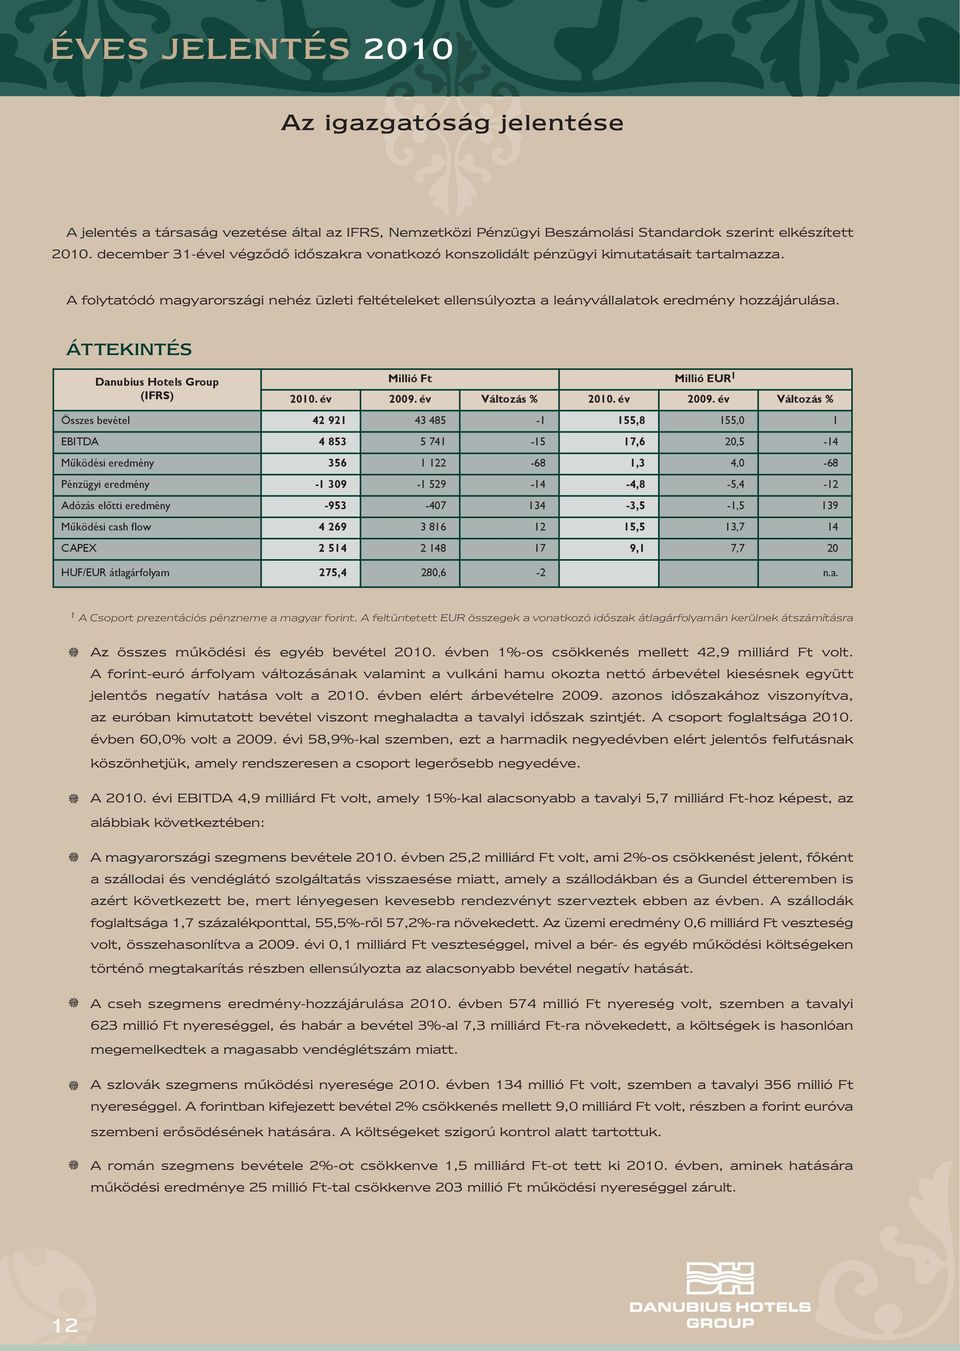 A folytatódó magyarországi nehéz üzleti feltételeket ellensúlyozta a leányvállalatok eredmény hozzájárulása. ÁTTEKINTÉS Danubius Hotels Group (IFRS) Millió Ft Millió EUR 1 2010. év 2009.